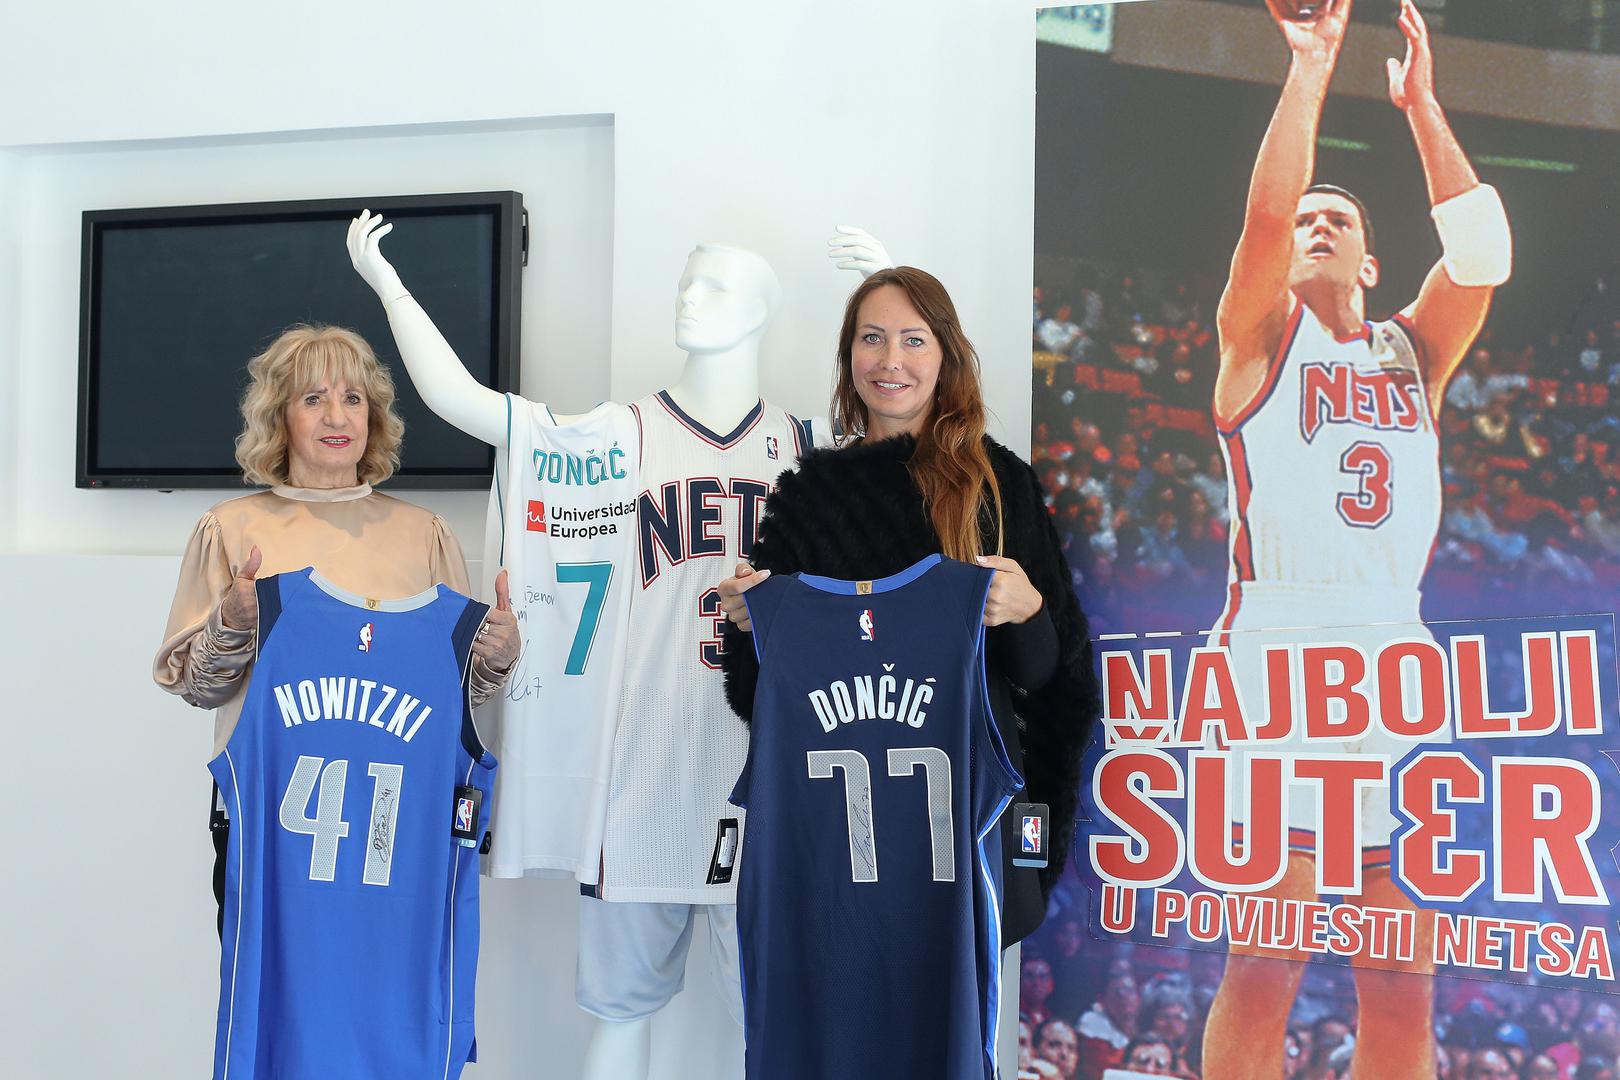 Memorijalno-muzejski centar Dražen Petrović od jučer je bogatiji za dresove dviju velikih NBA zvijezda. Za majicu odlazećeg diva Dirka Nowitzkog i budućeg NBA superstara Luke Dončića.